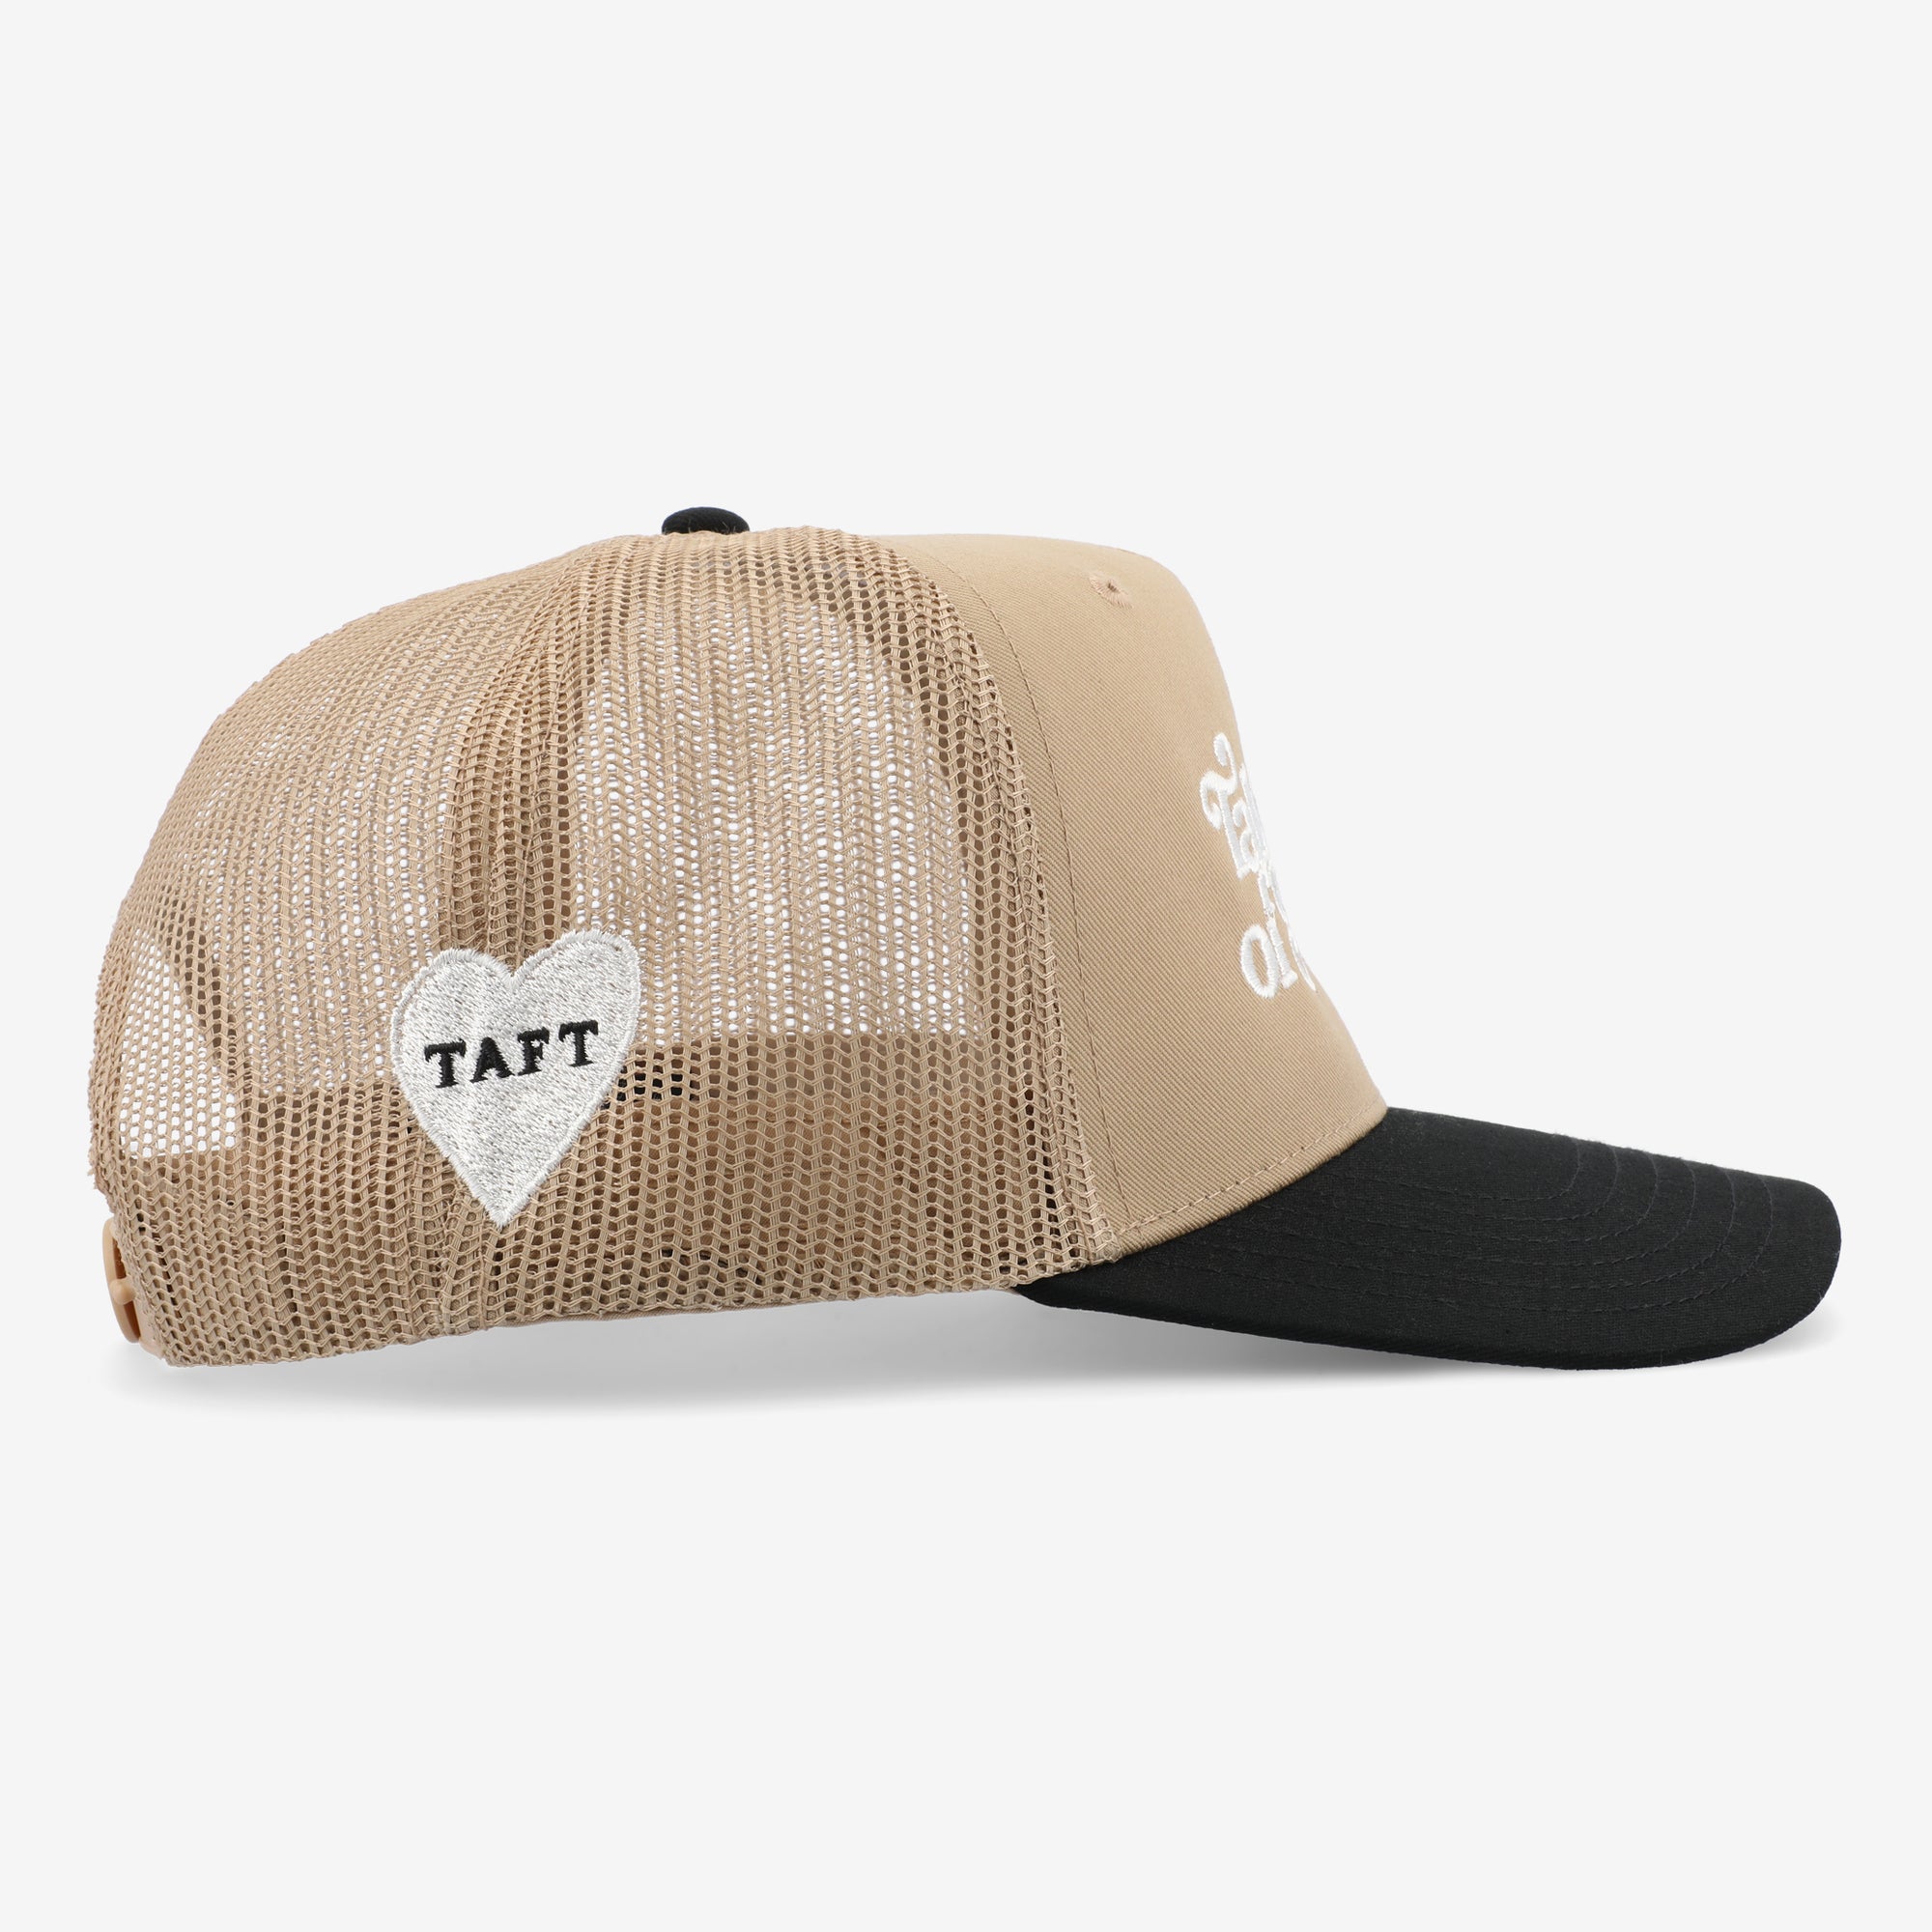 Take Care Hat in Black/Khaki